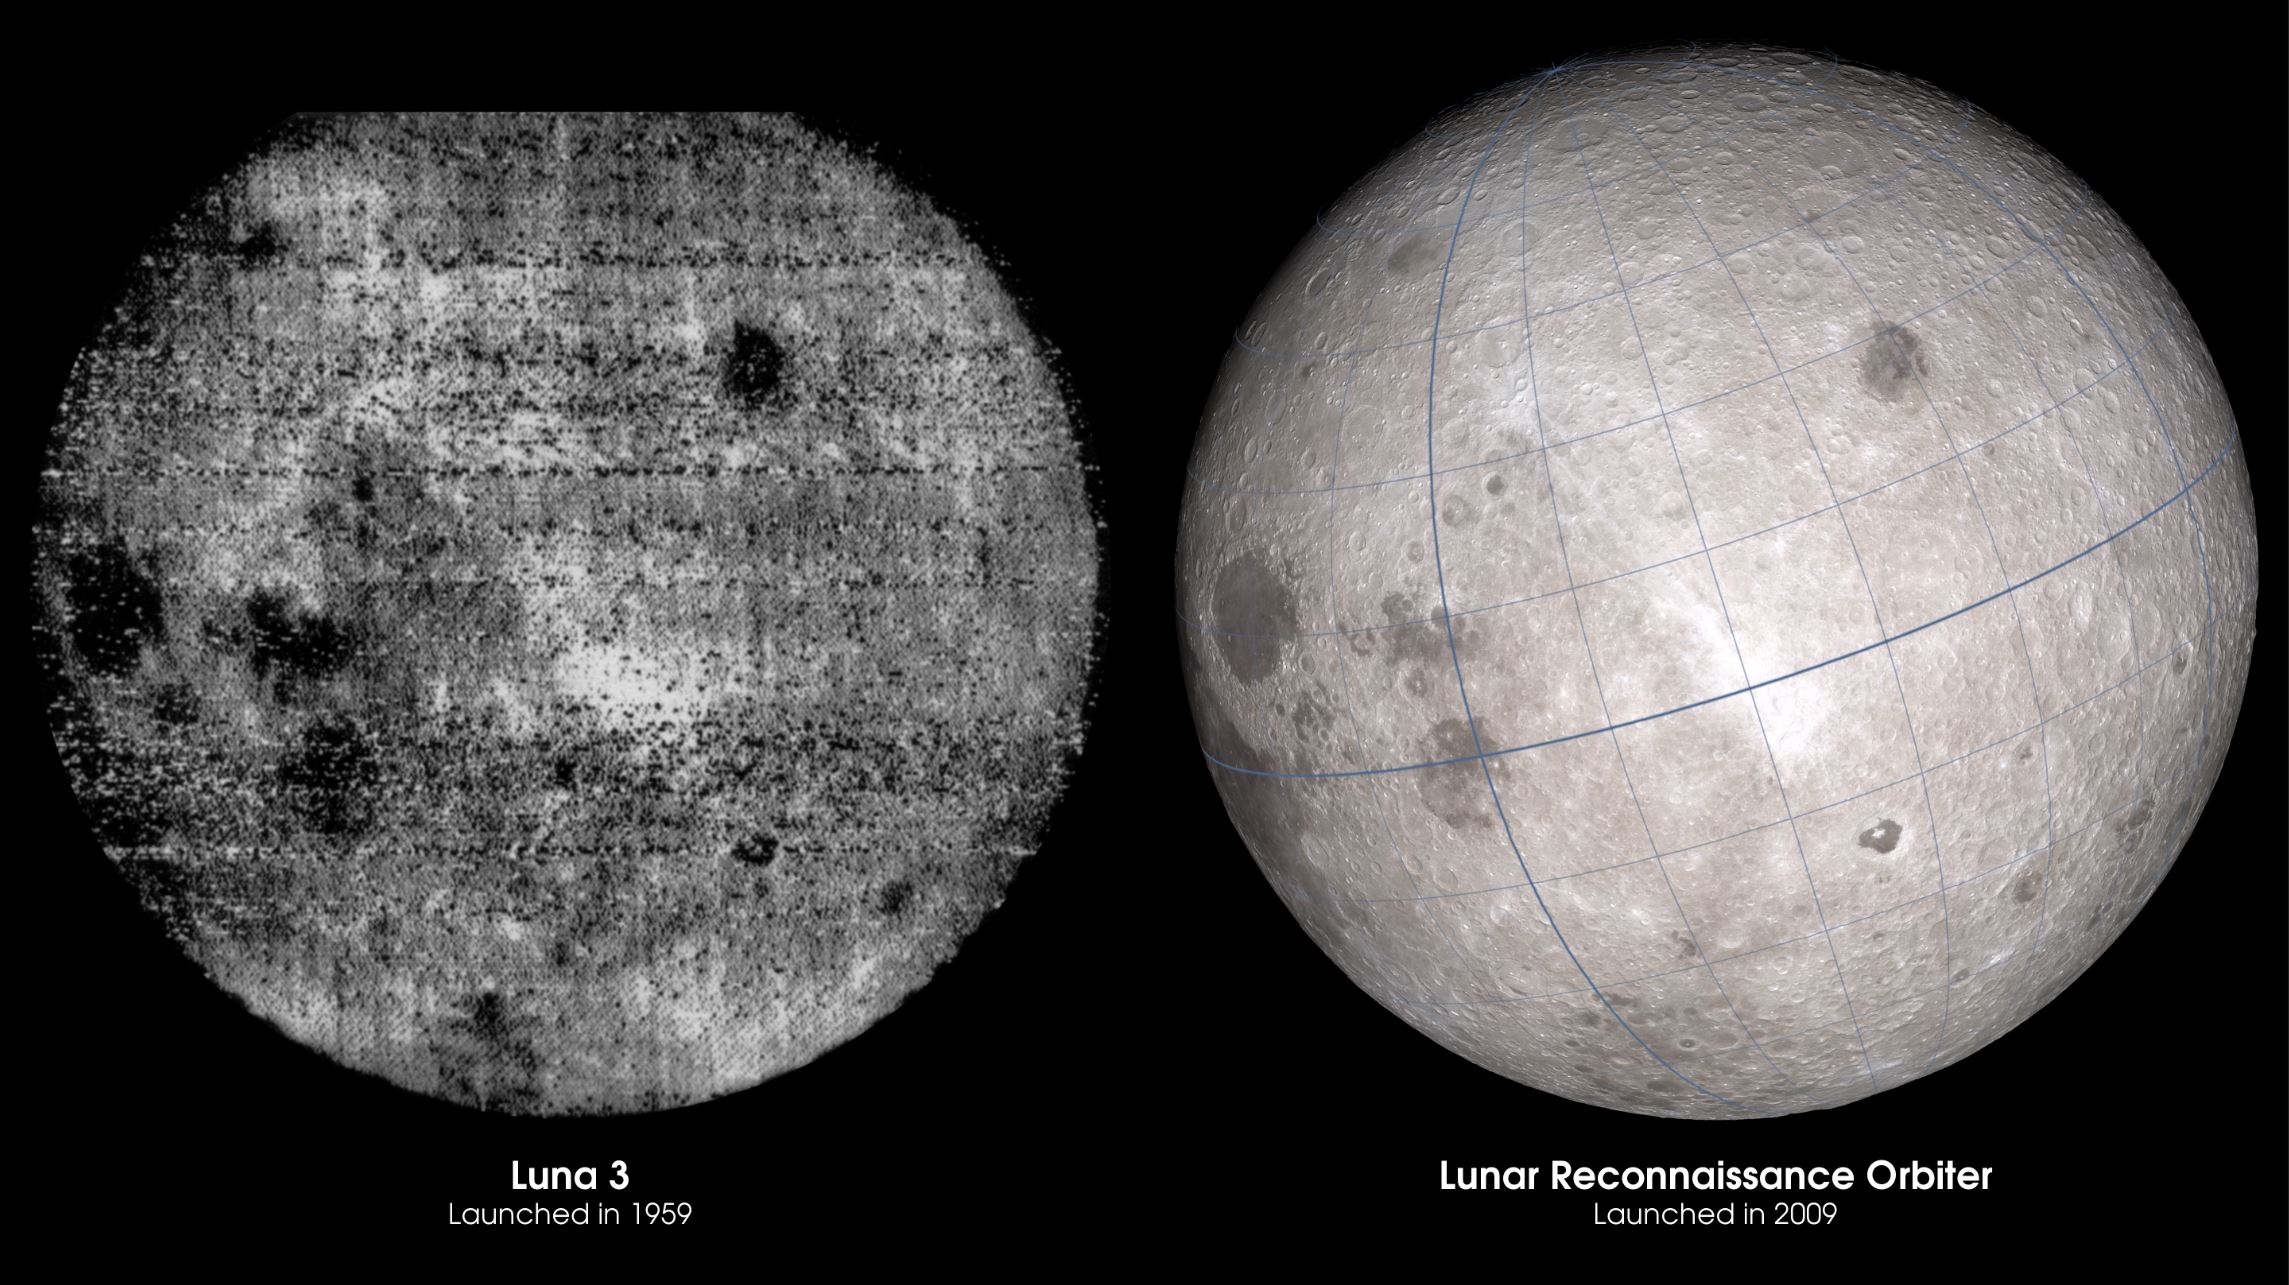 La luna falsa nswf. Снимок обратной стороны Луны 1959. Луна 3 снимки обратной стороны Луны. Фото обратной стороны Луны 1959. Первые фотографии обратной стороны Луны 1959.